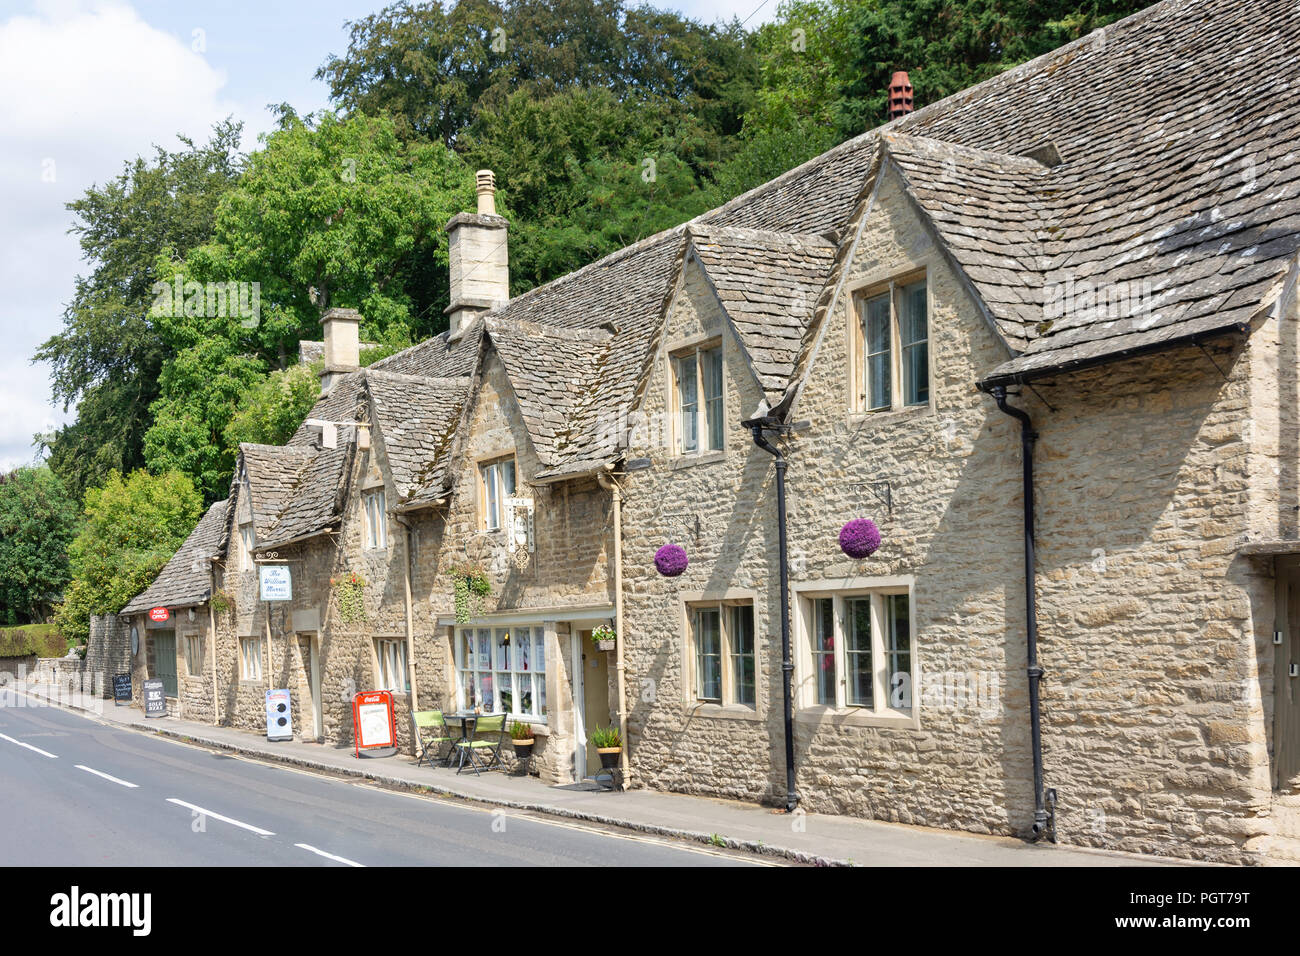 Row of Cotswold stone cottages, The Street, Bibury, Gloucestershire, England, United Kingdom Stock Photo